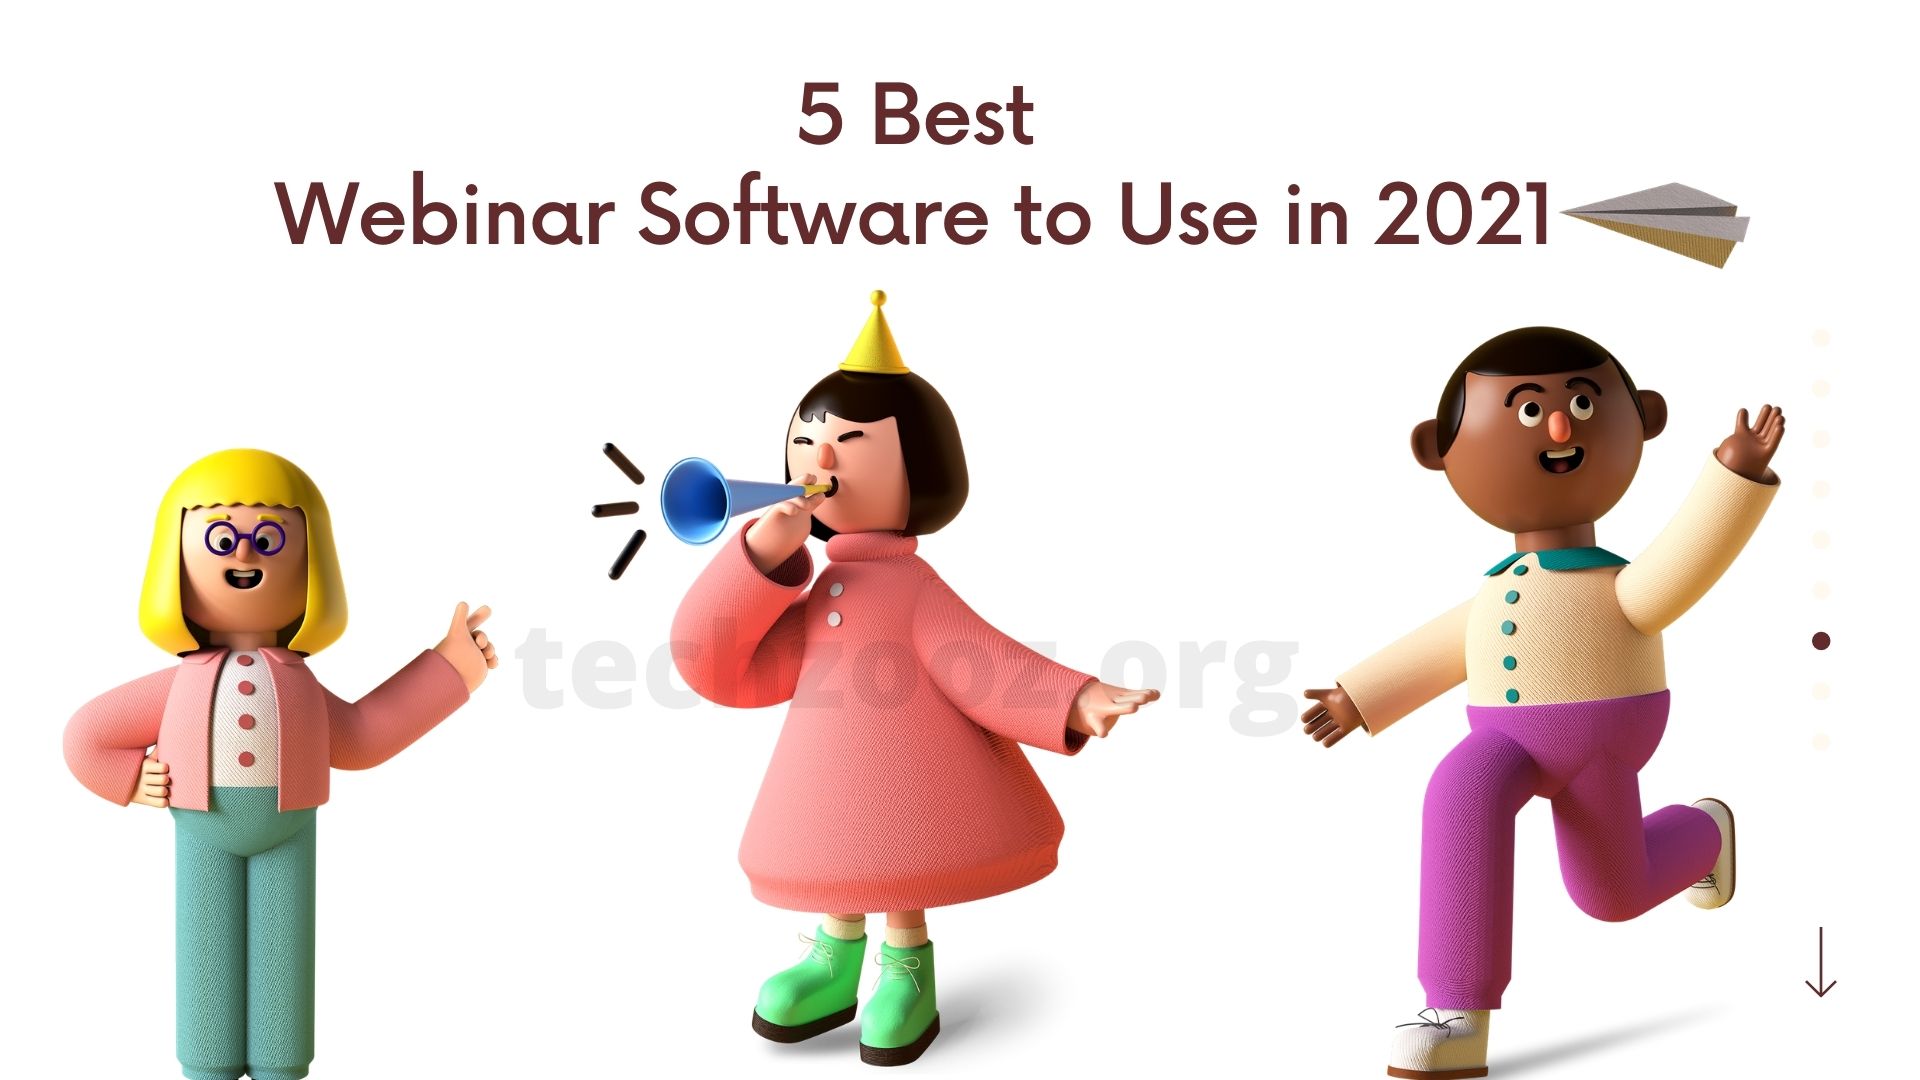 5 Best Webinar Software to Use in 2021